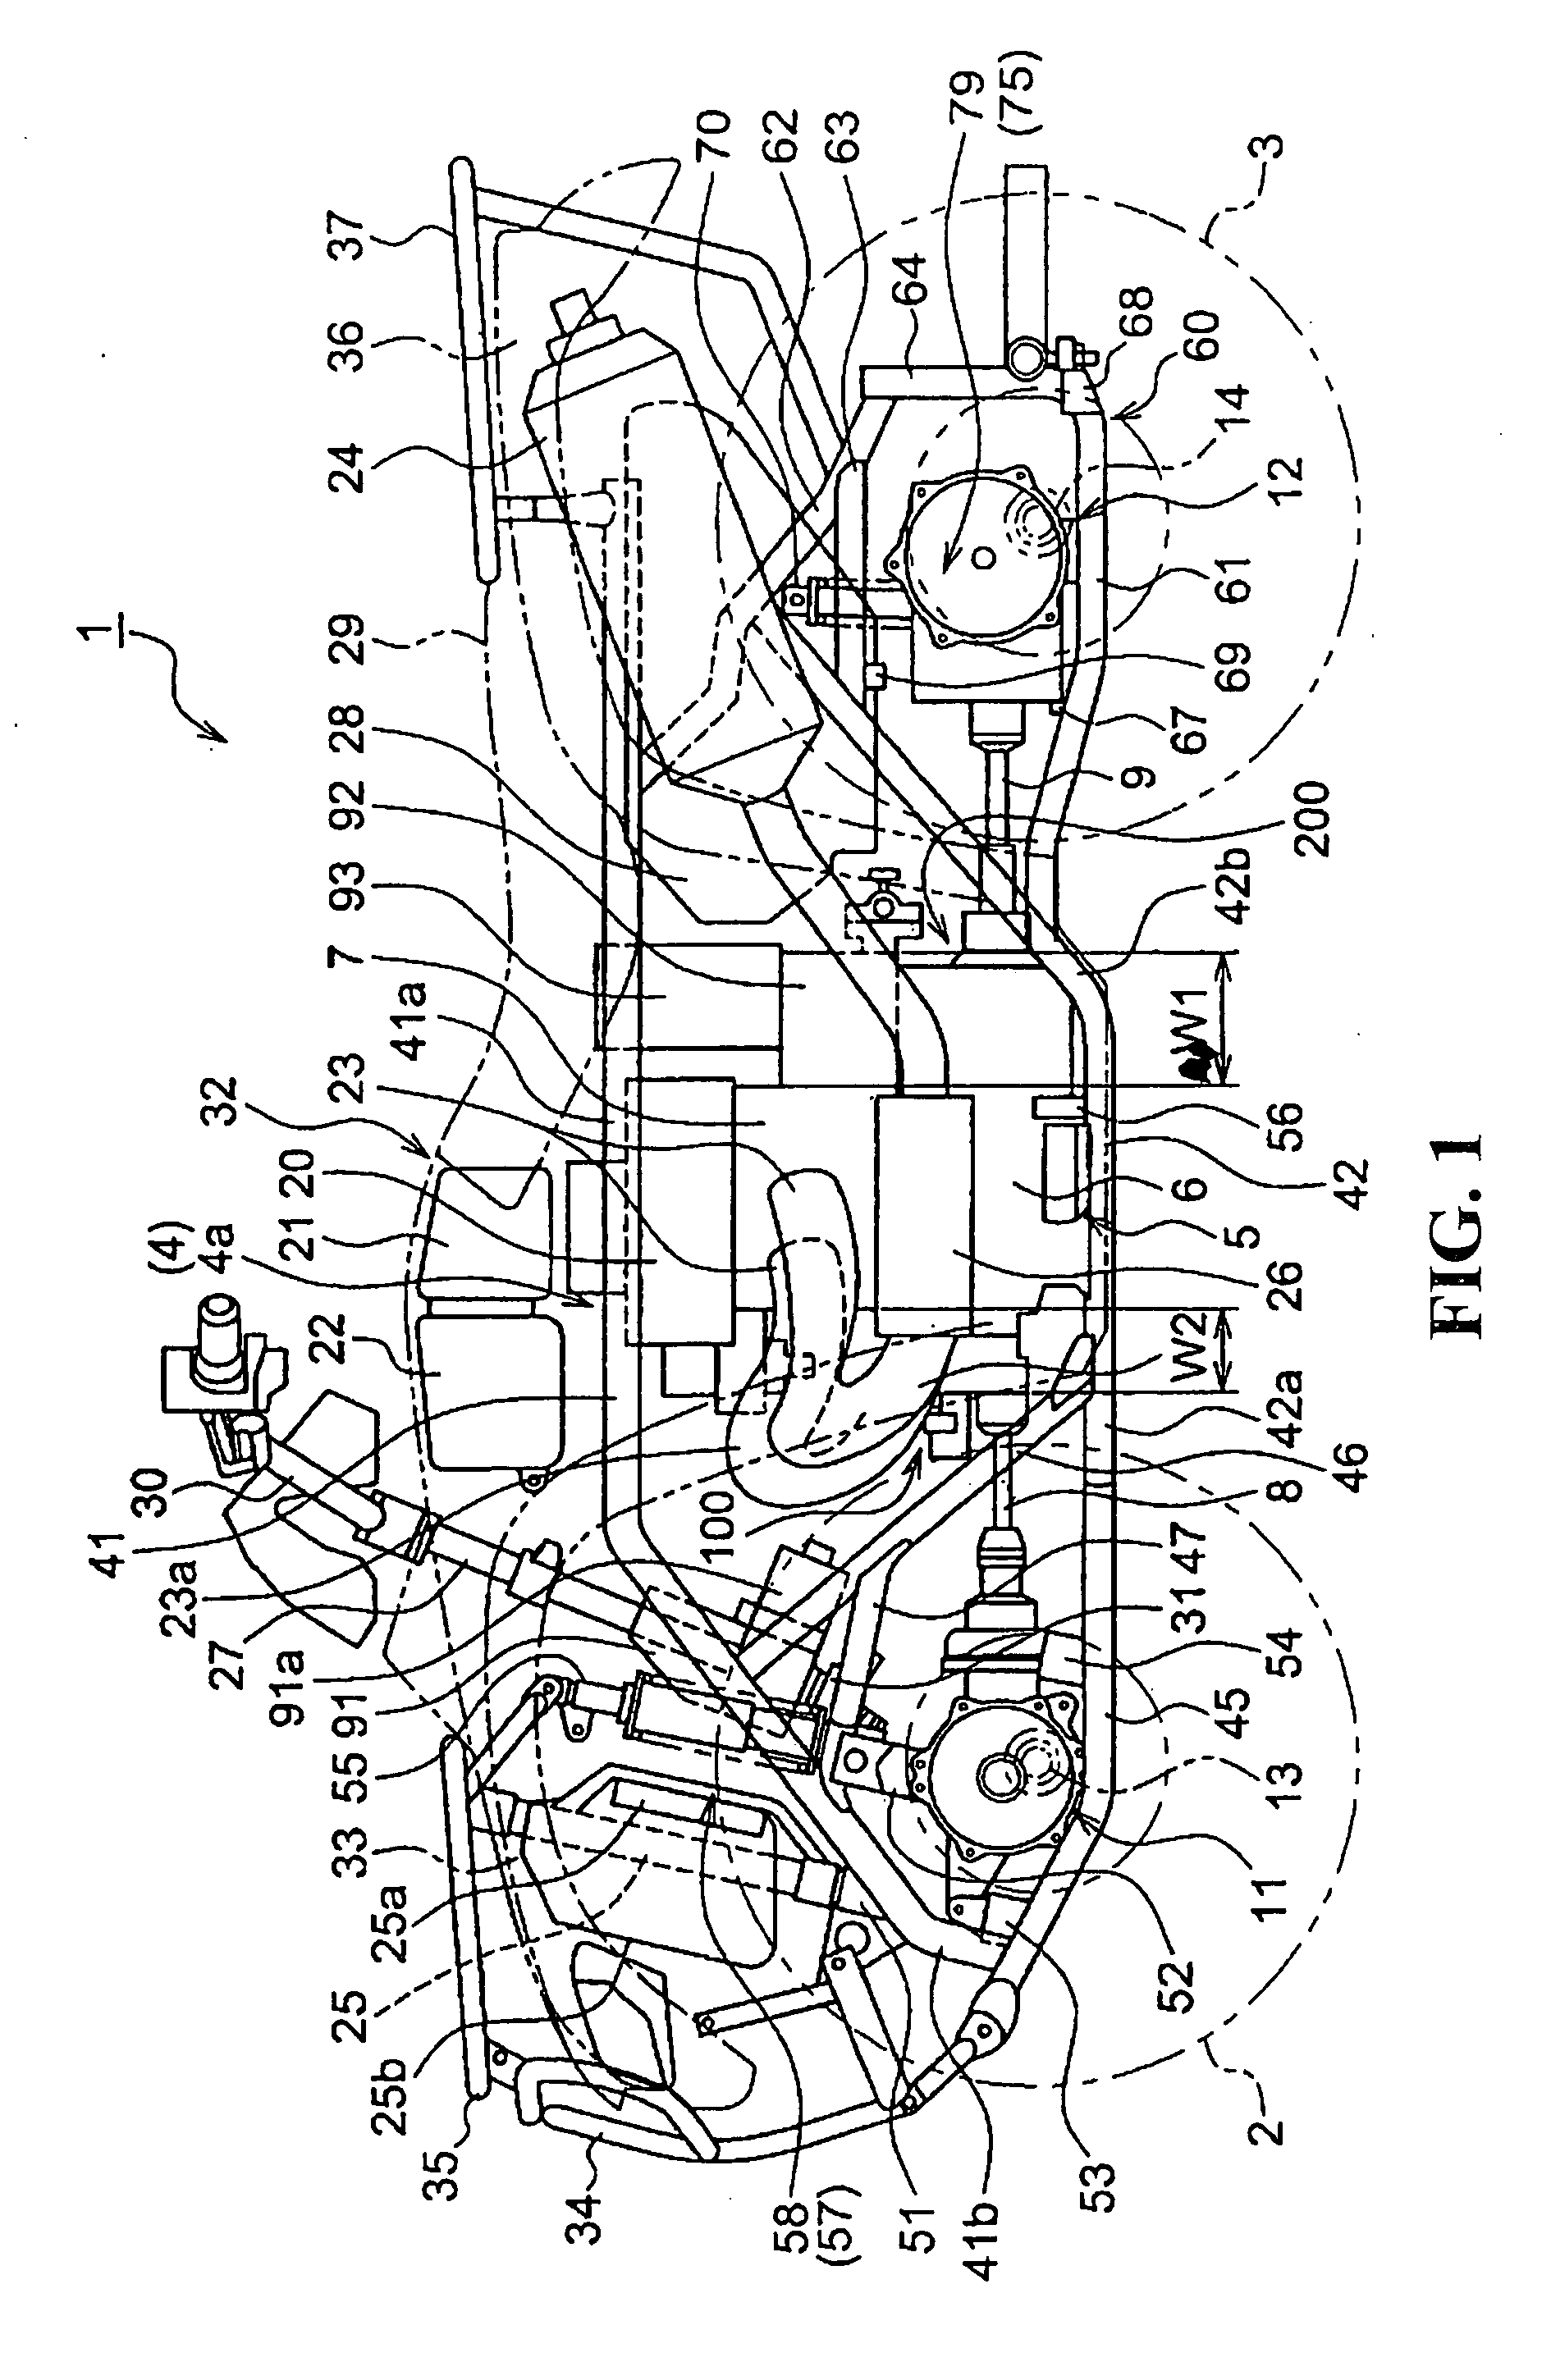 Engine arrangement structure of saddle-ride type vehicle